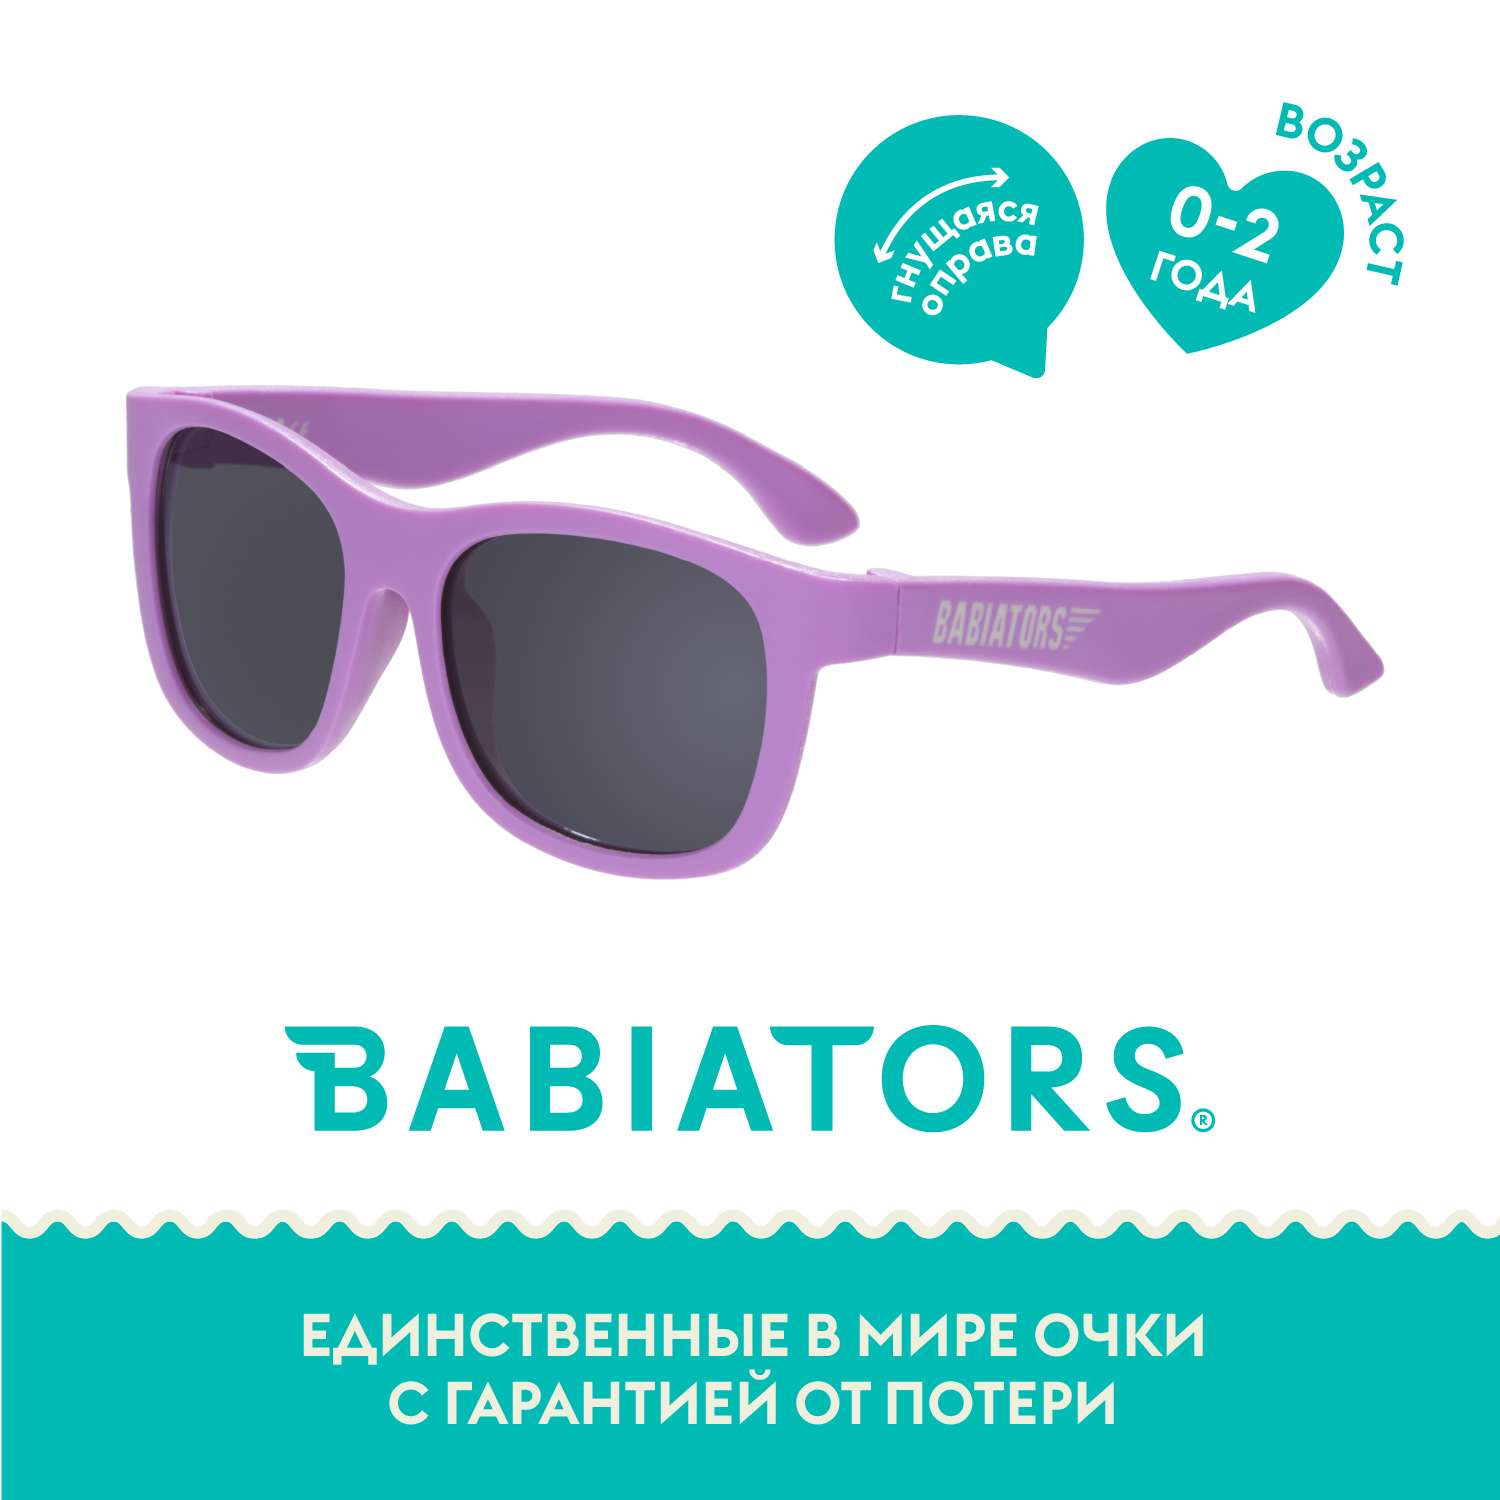 Детские солнцезащитные очки Babiators Navigator Крошка сирень 0-2 года NAV-041 - фото 2